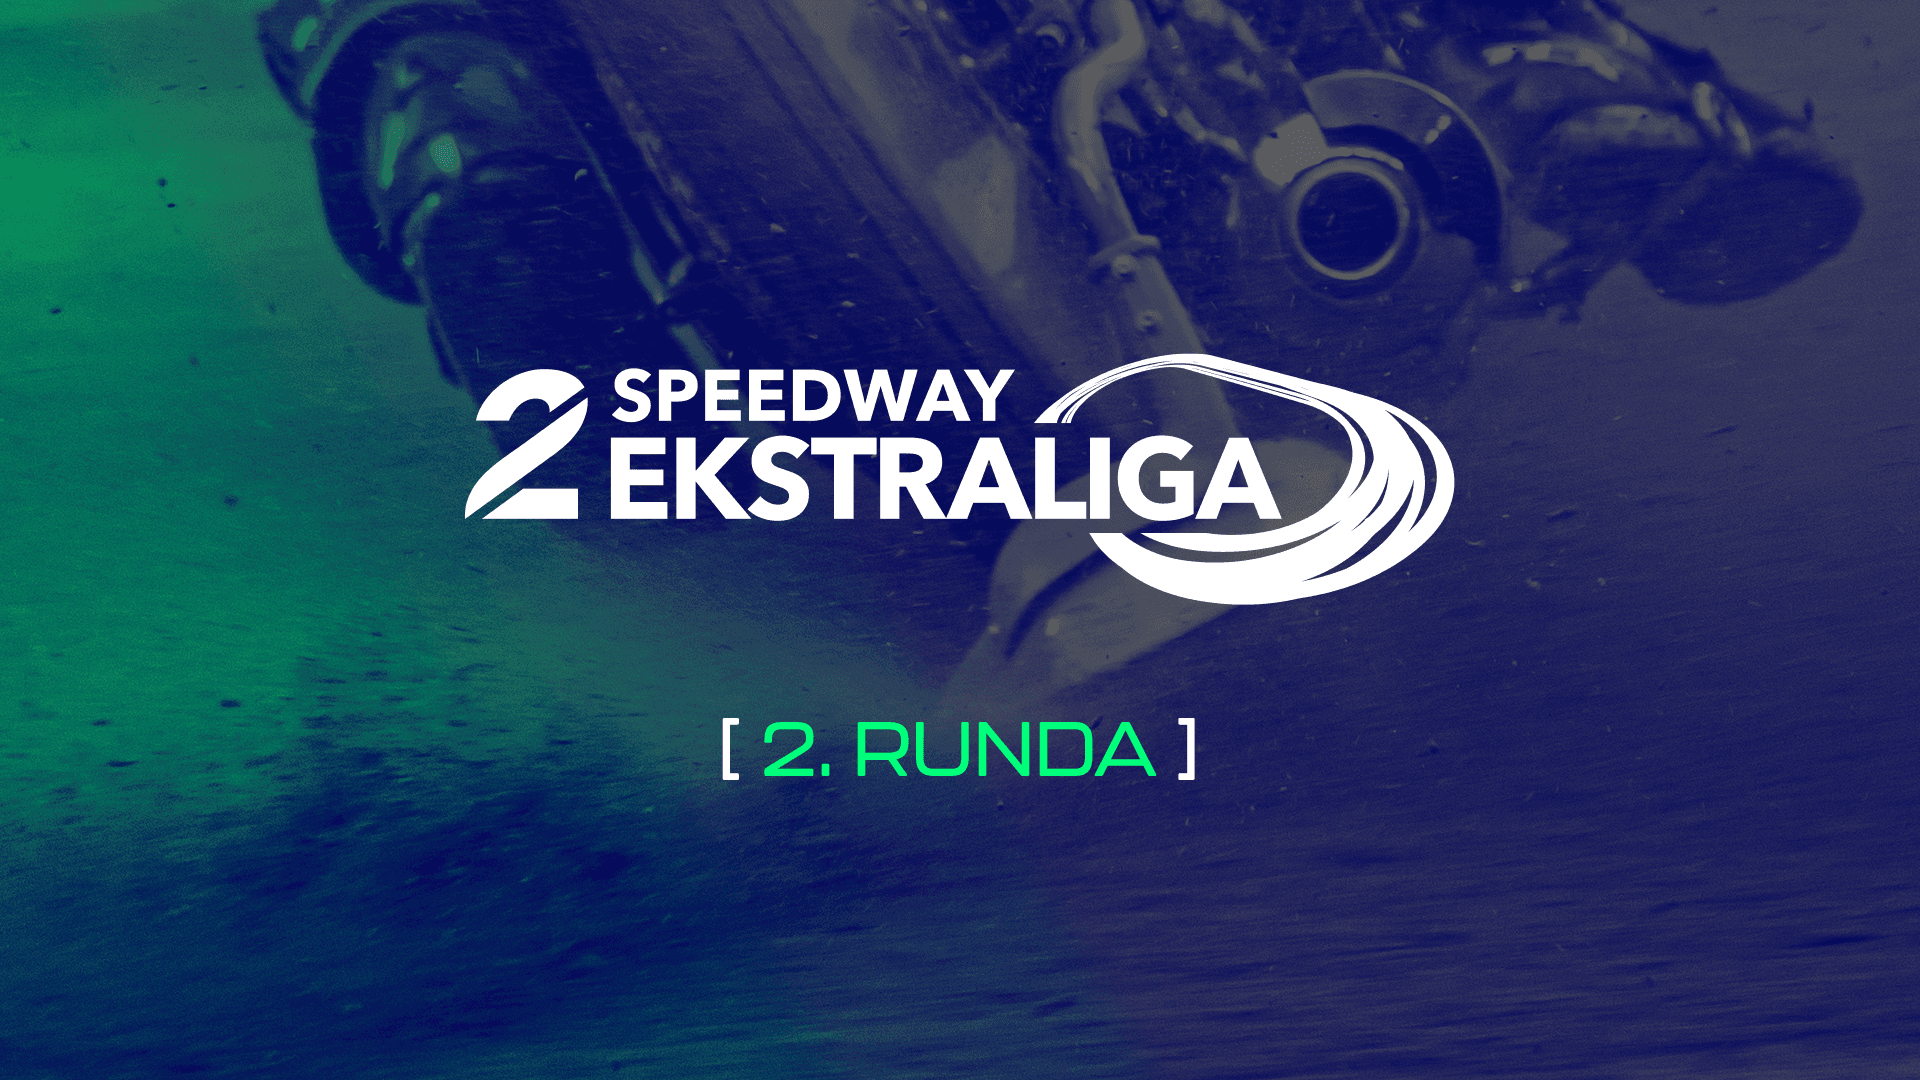 Rybnik, Łódź, Ostrów i Krosno gospodarzami meczów 2. rundy Speedway 2. Ekstraligi (20 i 21 kwietnia)